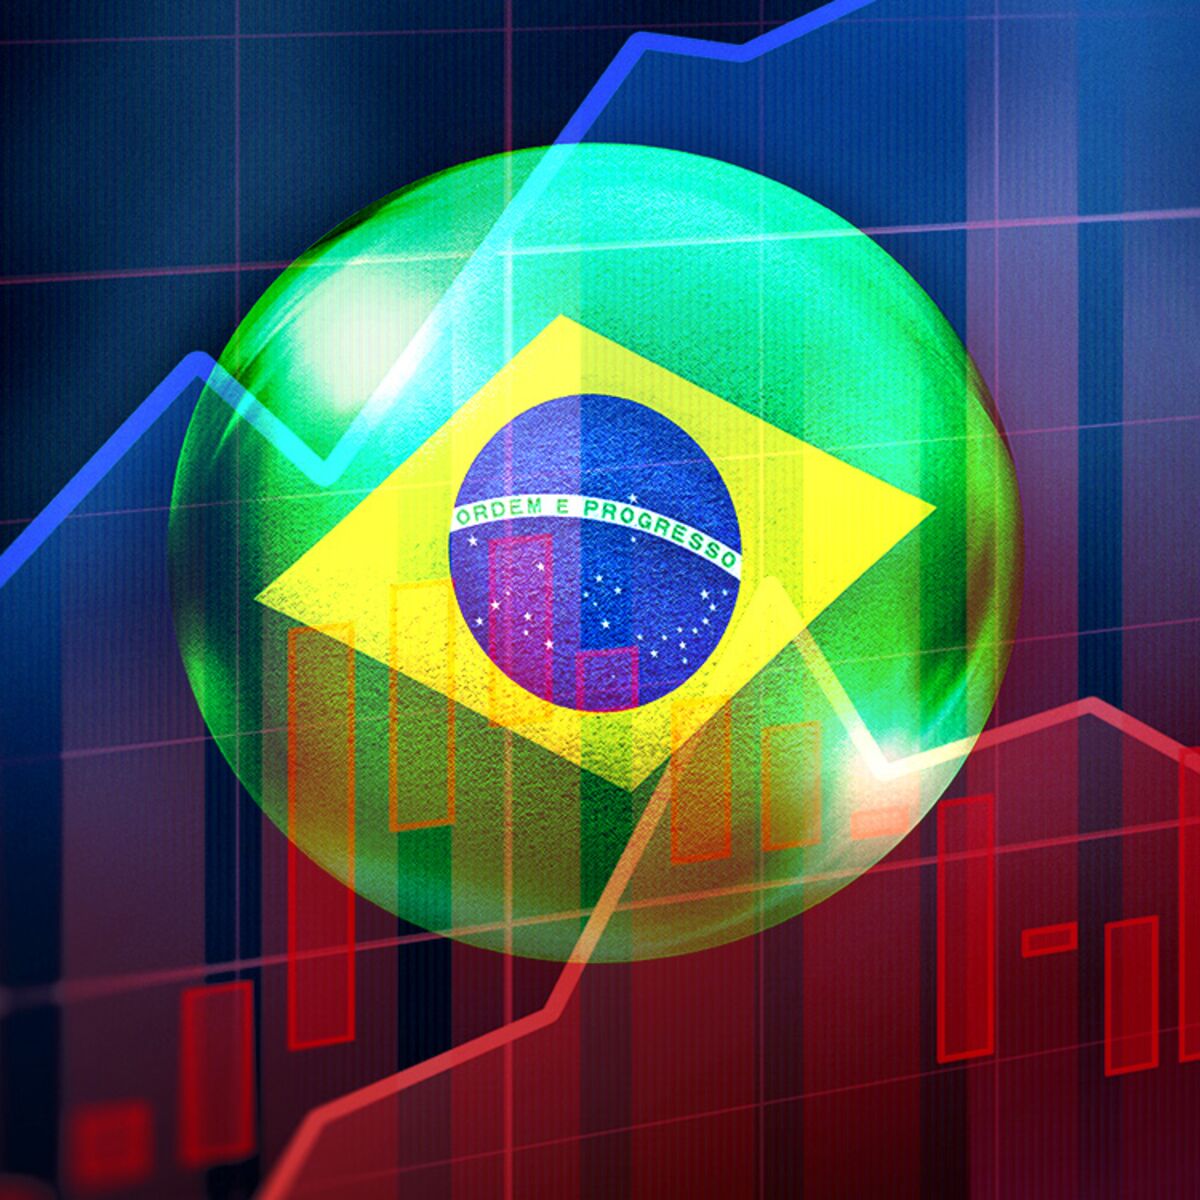 Banco central Brasil: Economía crecerá más rápido de lo esperado